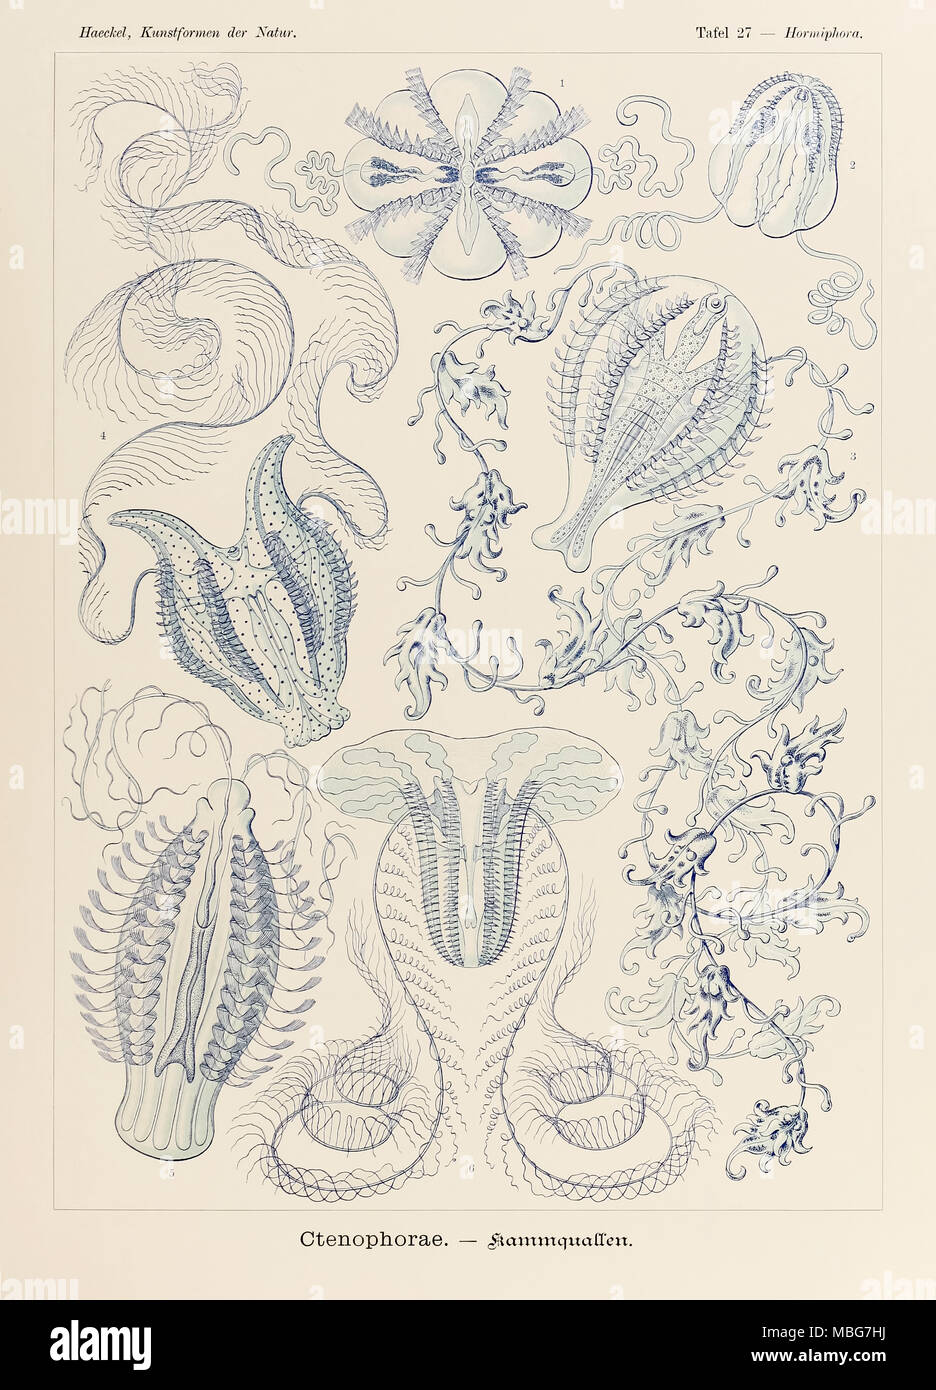 Hormiphora Ctenophorae 27 Plaque de 'Kunstformen der Natur' (formes d'art dans la Nature) illustrée par Ernst Haeckel (1834-1919). Voir plus d'informations ci-dessous. Banque D'Images